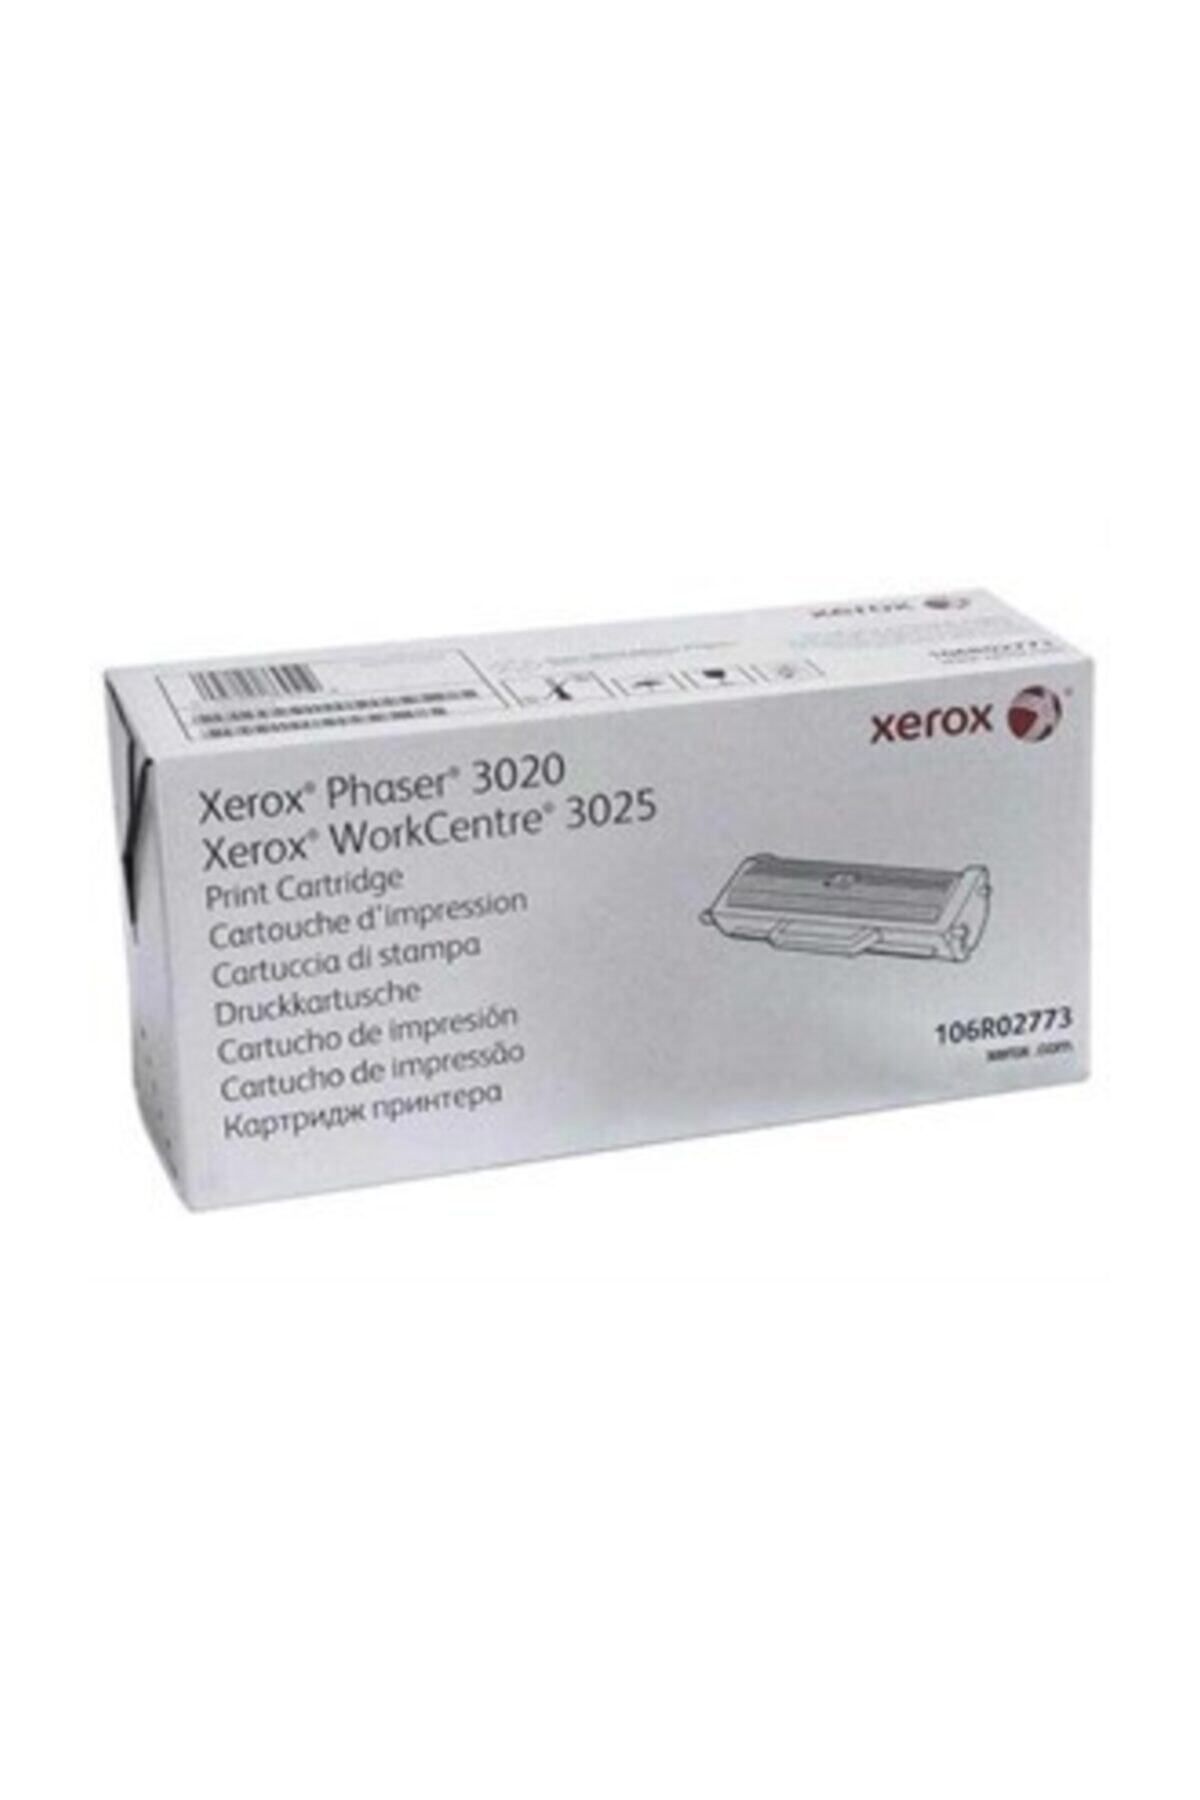 Xerox Phaser 3020 Toner